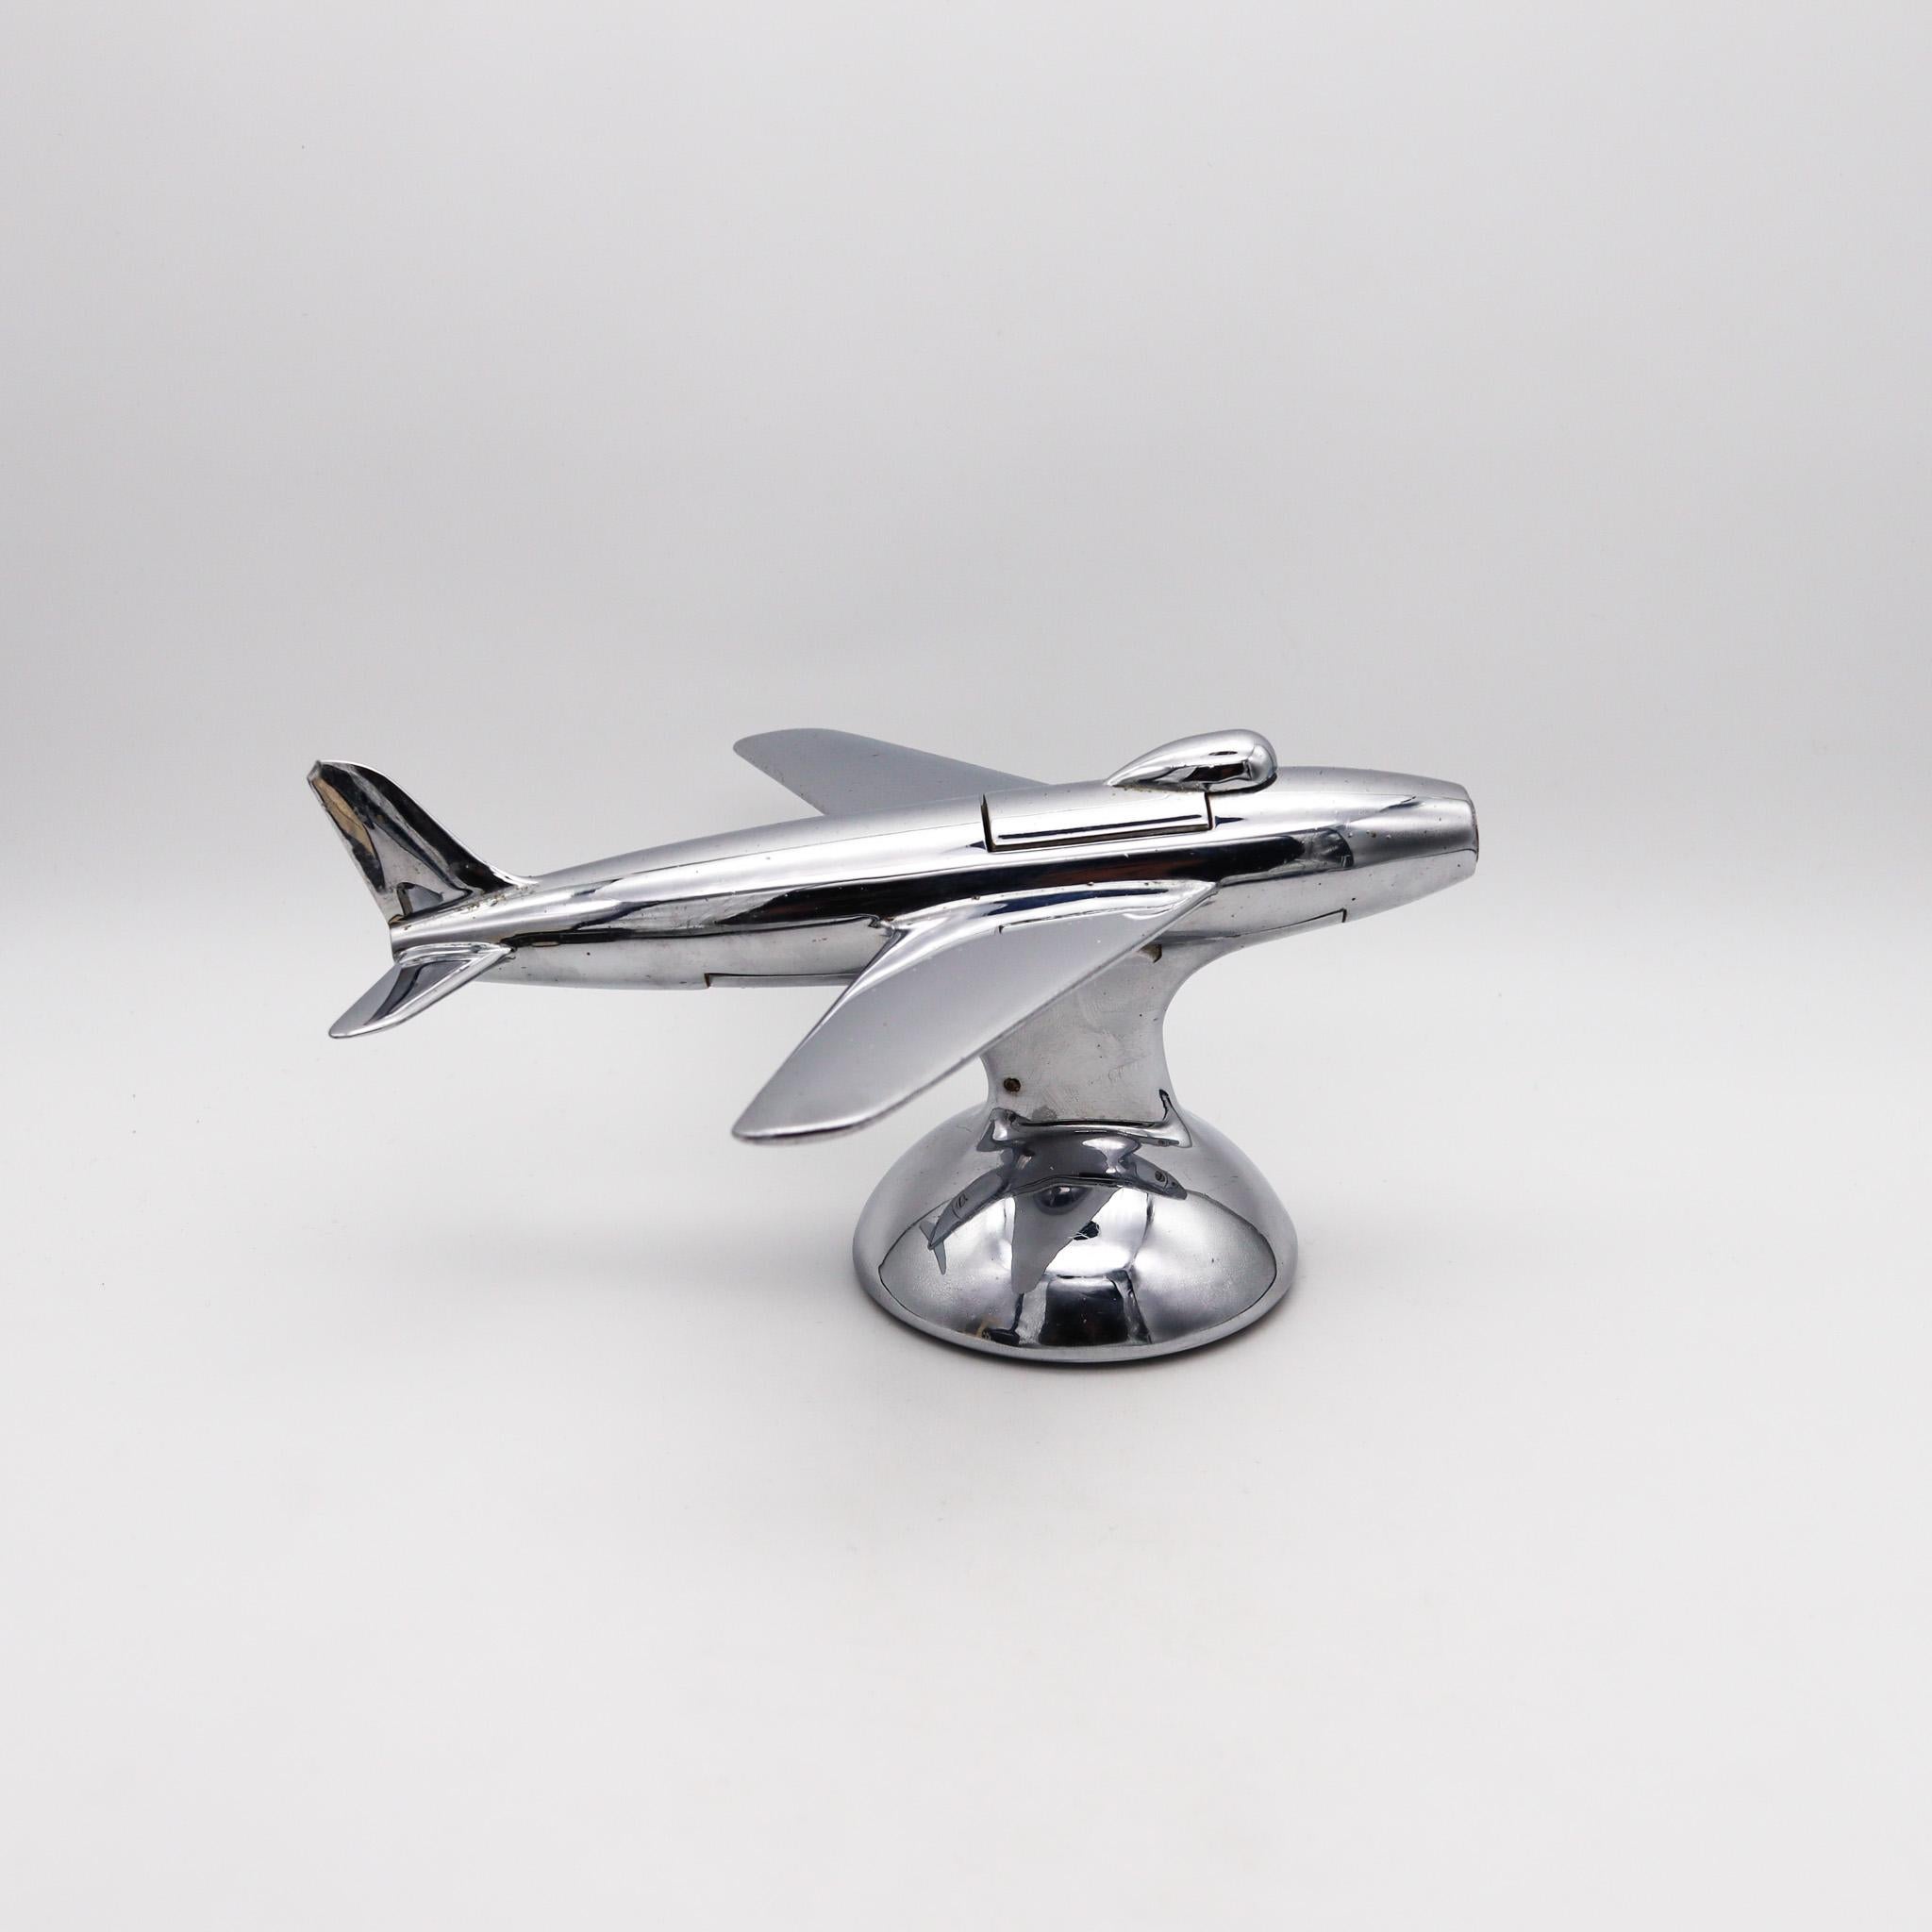 Briquet de table de l'avion de chasse F-86 Jet, conçu par Alfred Dunhill.

Un briquet de table inhabituel fabriqué à Londres en Angleterre par la célèbre The Table Company, entre 1954 et 1961. Le briquet a été réalisé en acier chromé poli, au cours